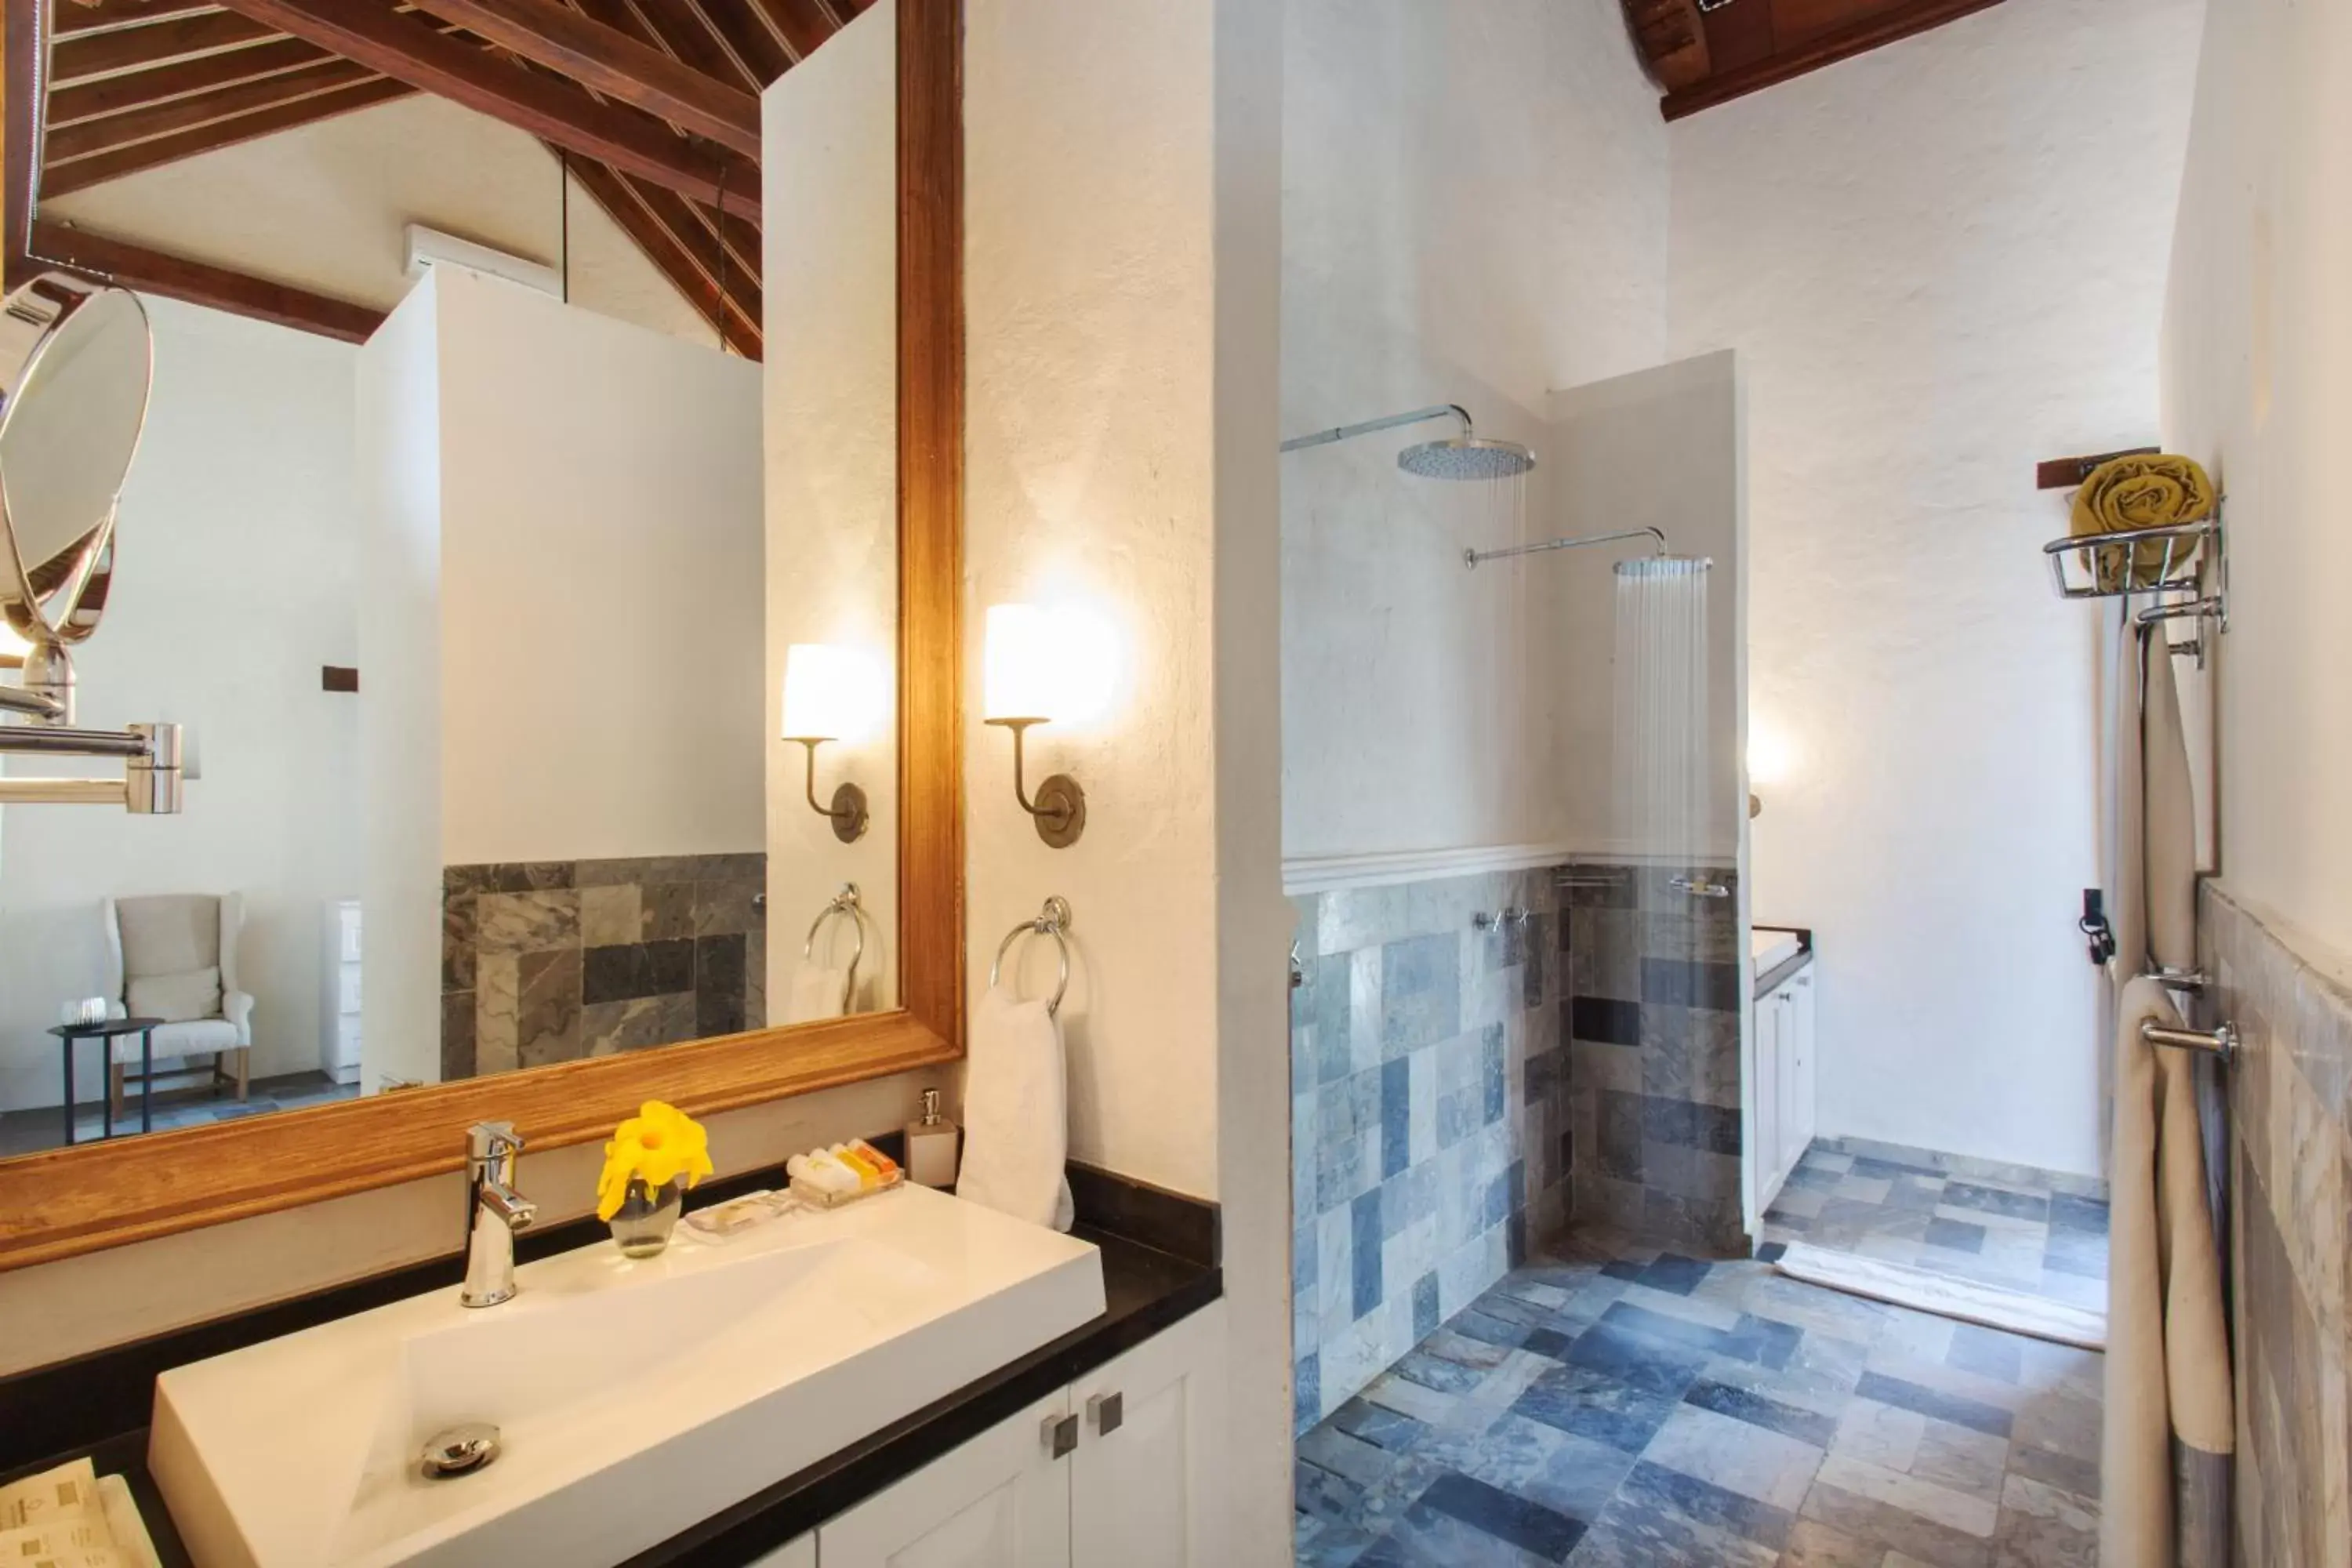 Area and facilities, Bathroom in Hotel Boutique Casa del Coliseo